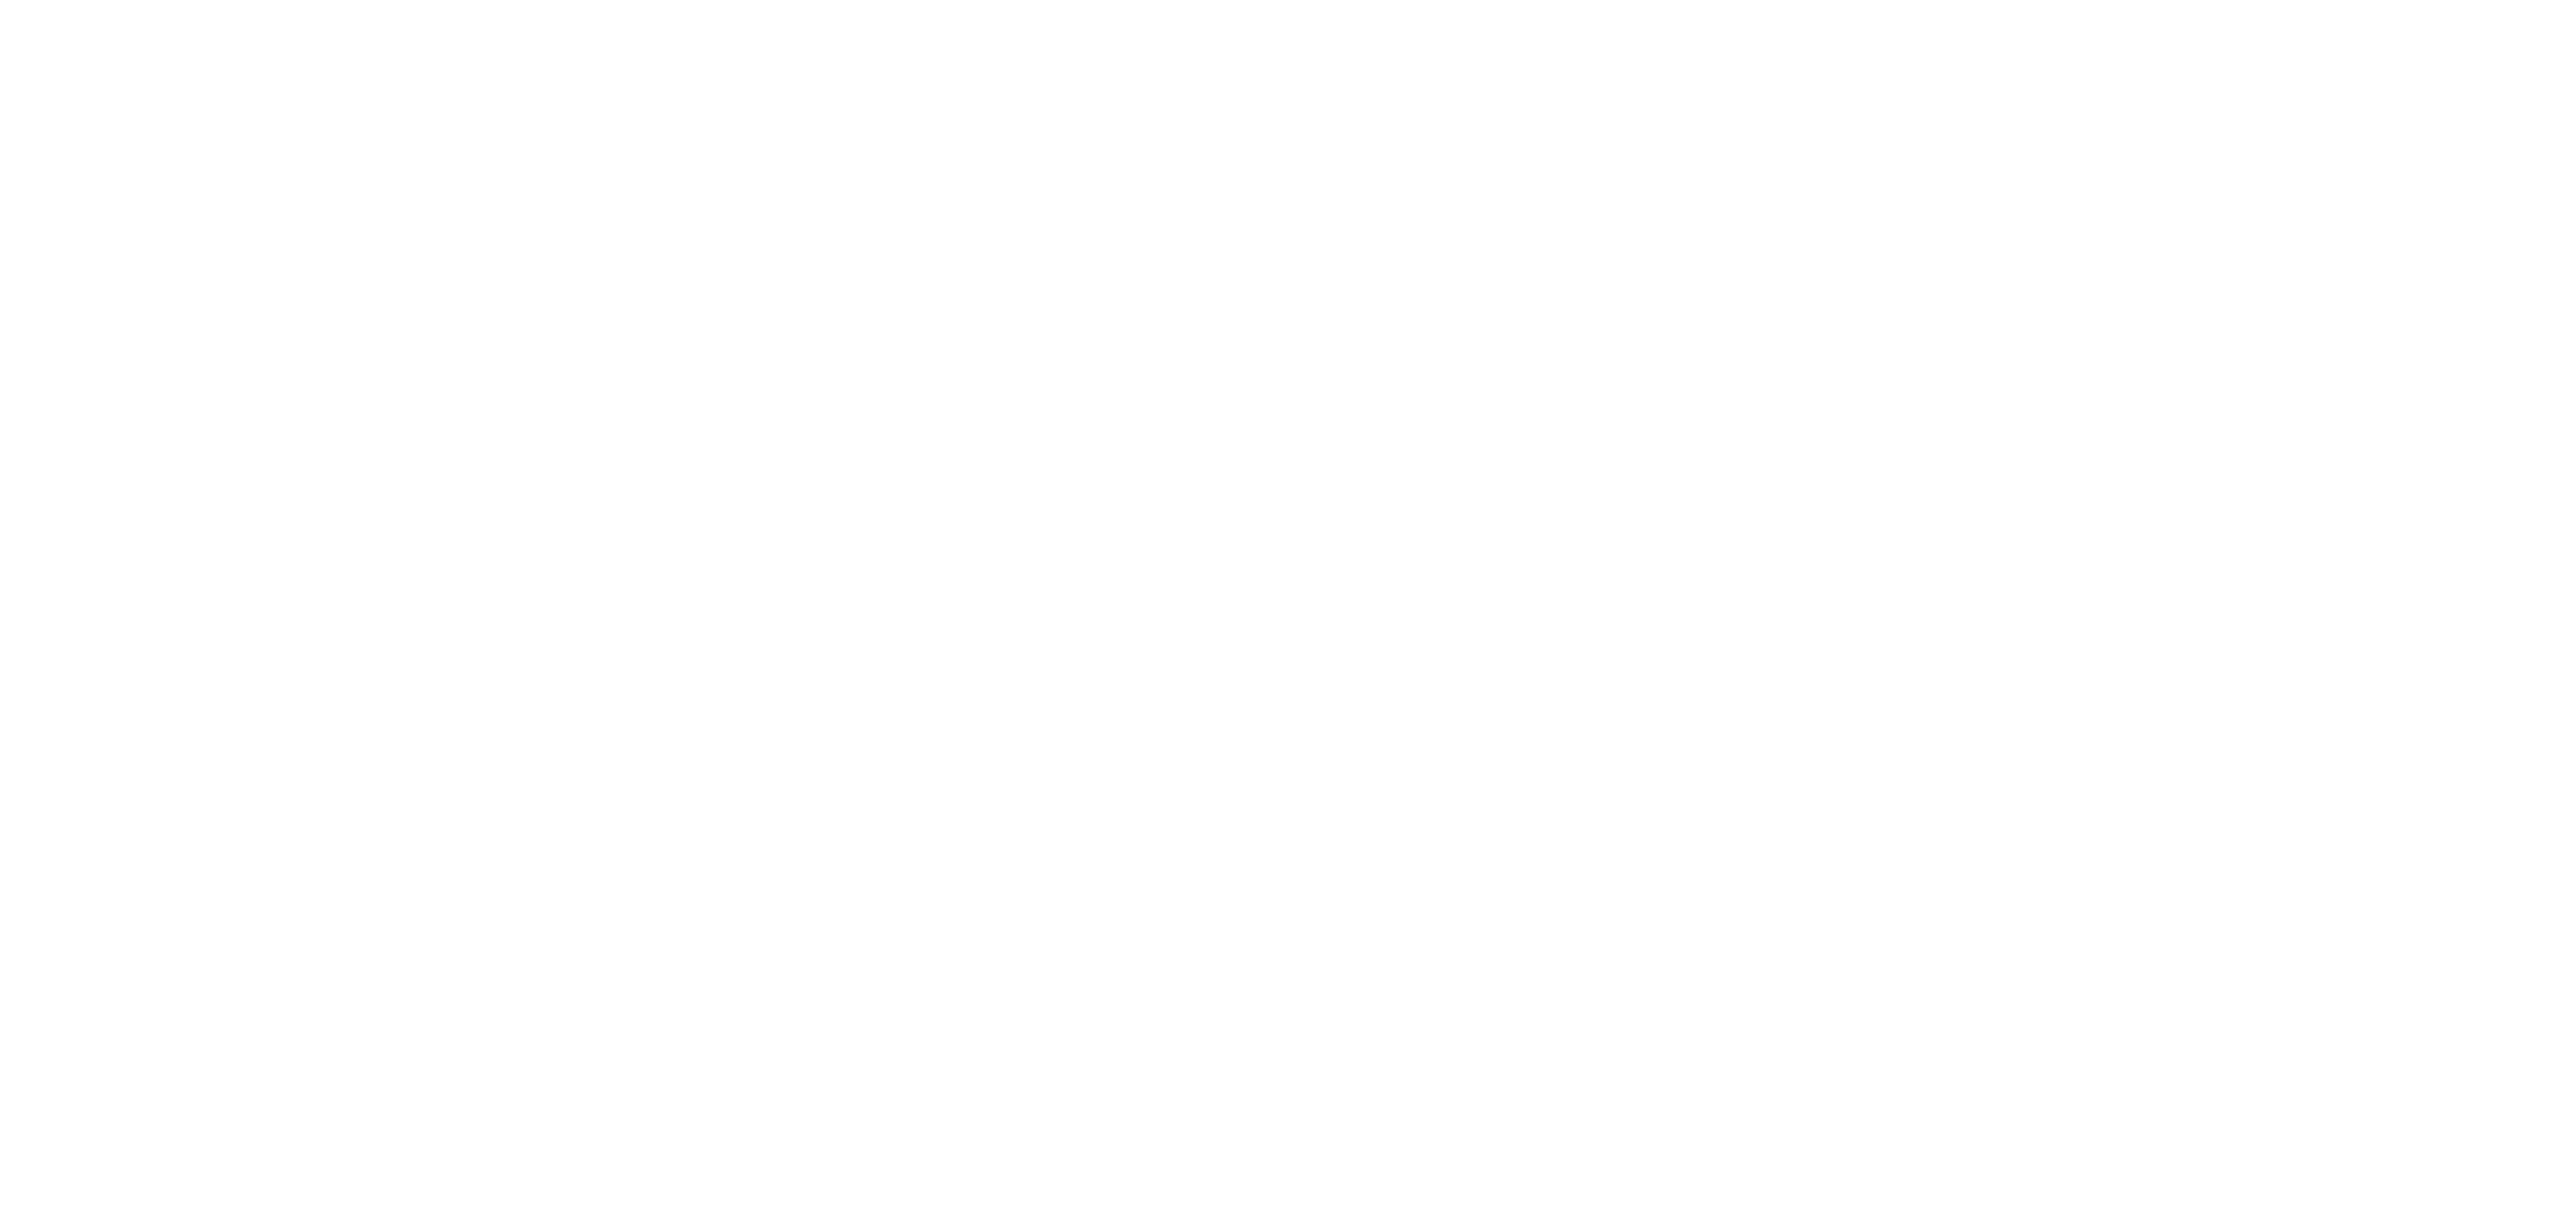 The Velveteen Rabbit logo